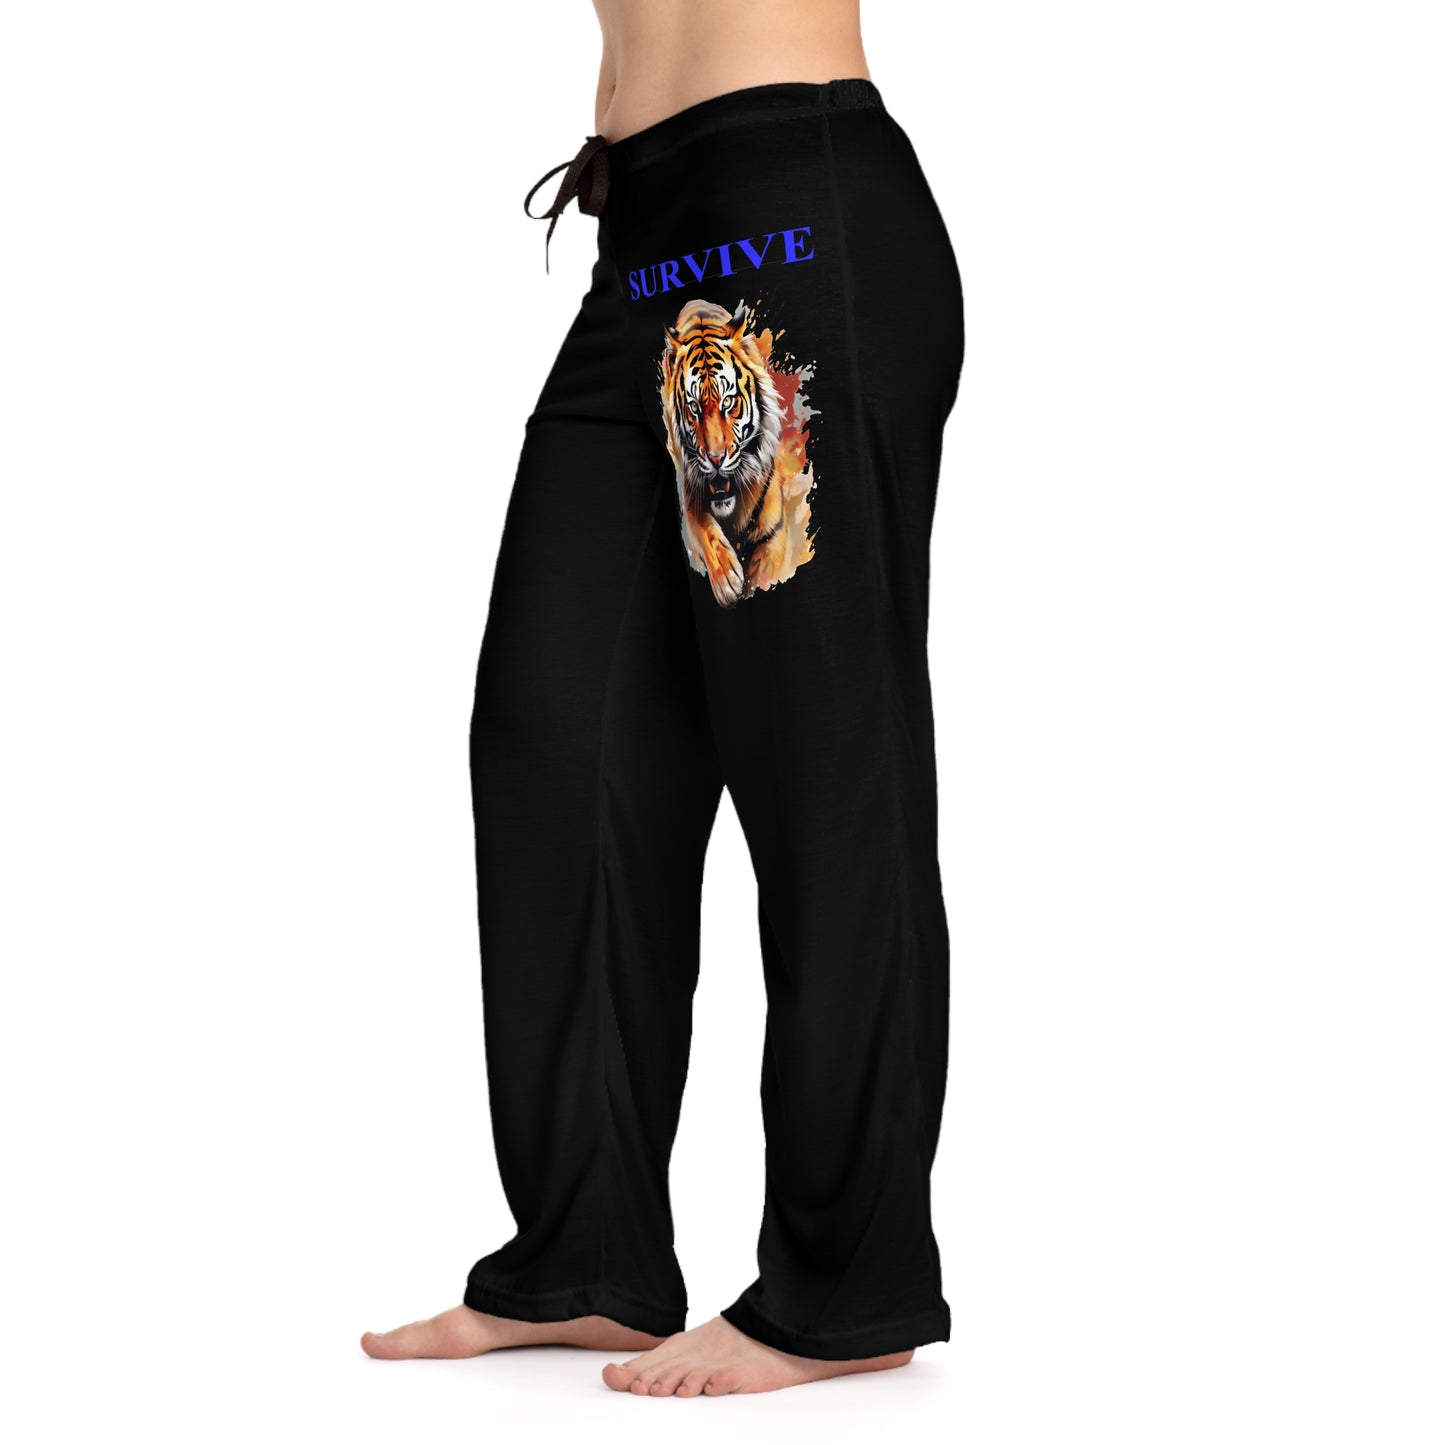 Women's Pajama Pants (AOP)